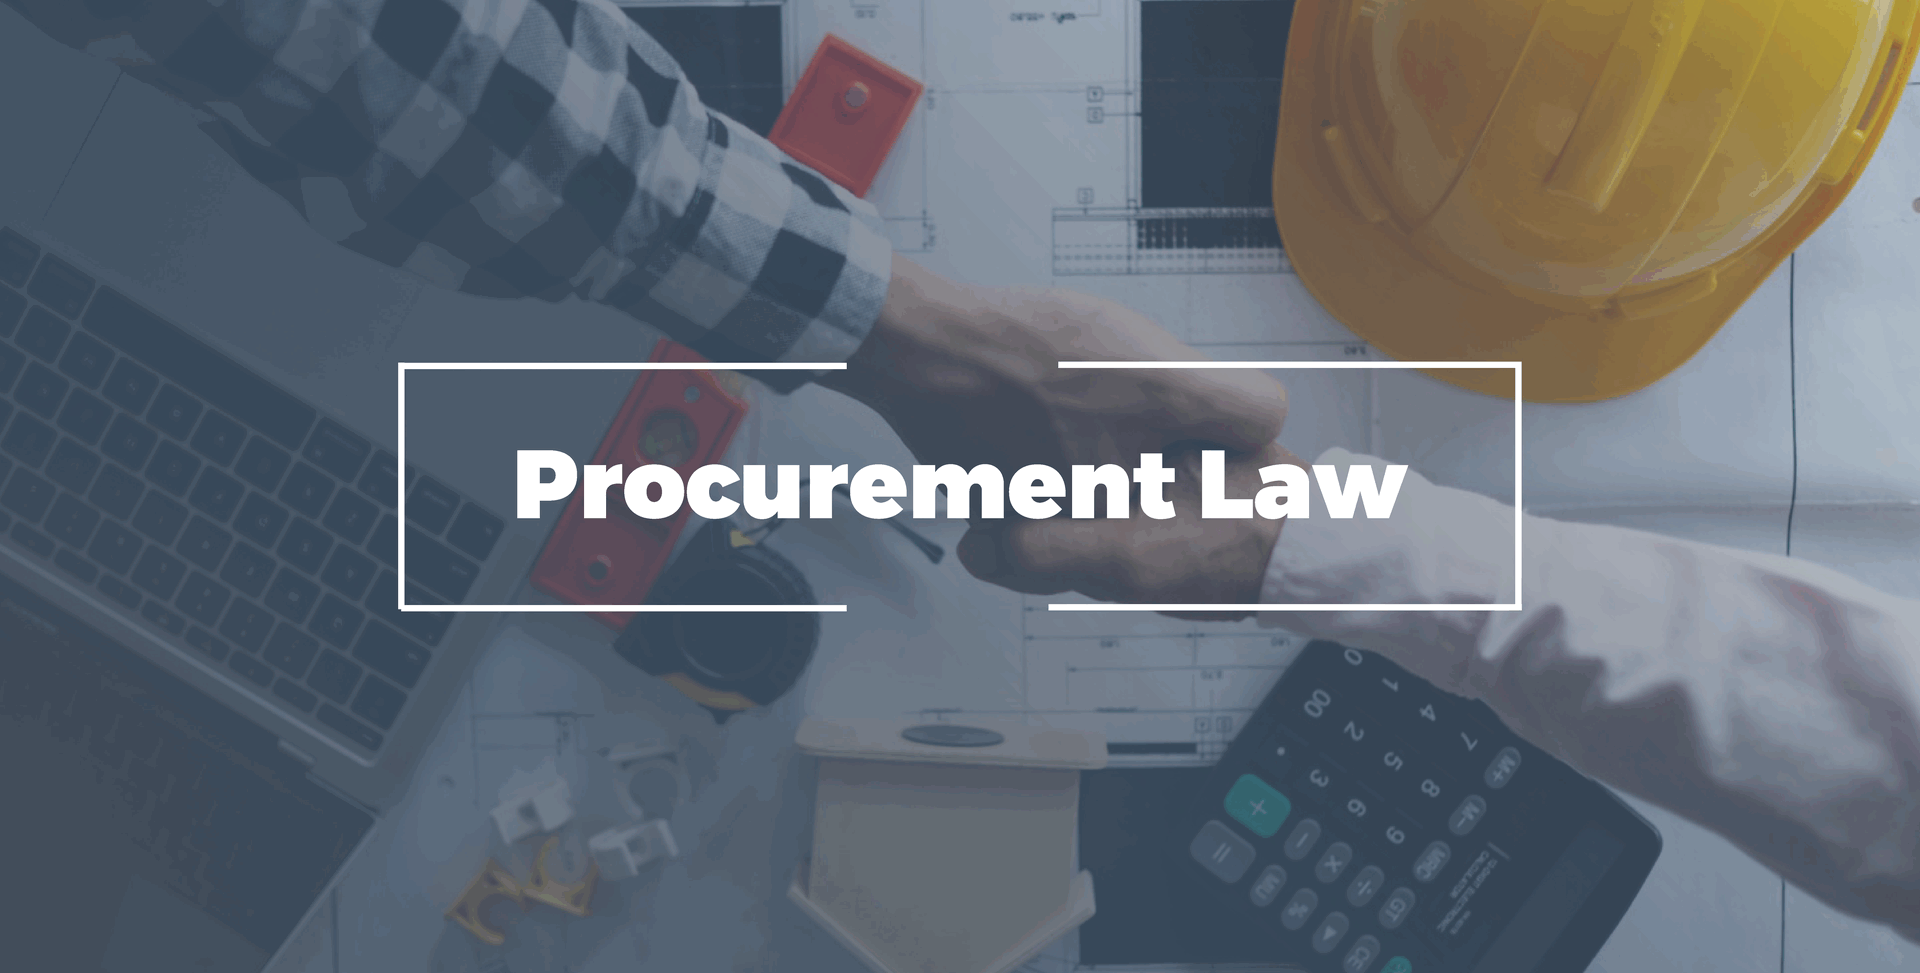 Procurement law